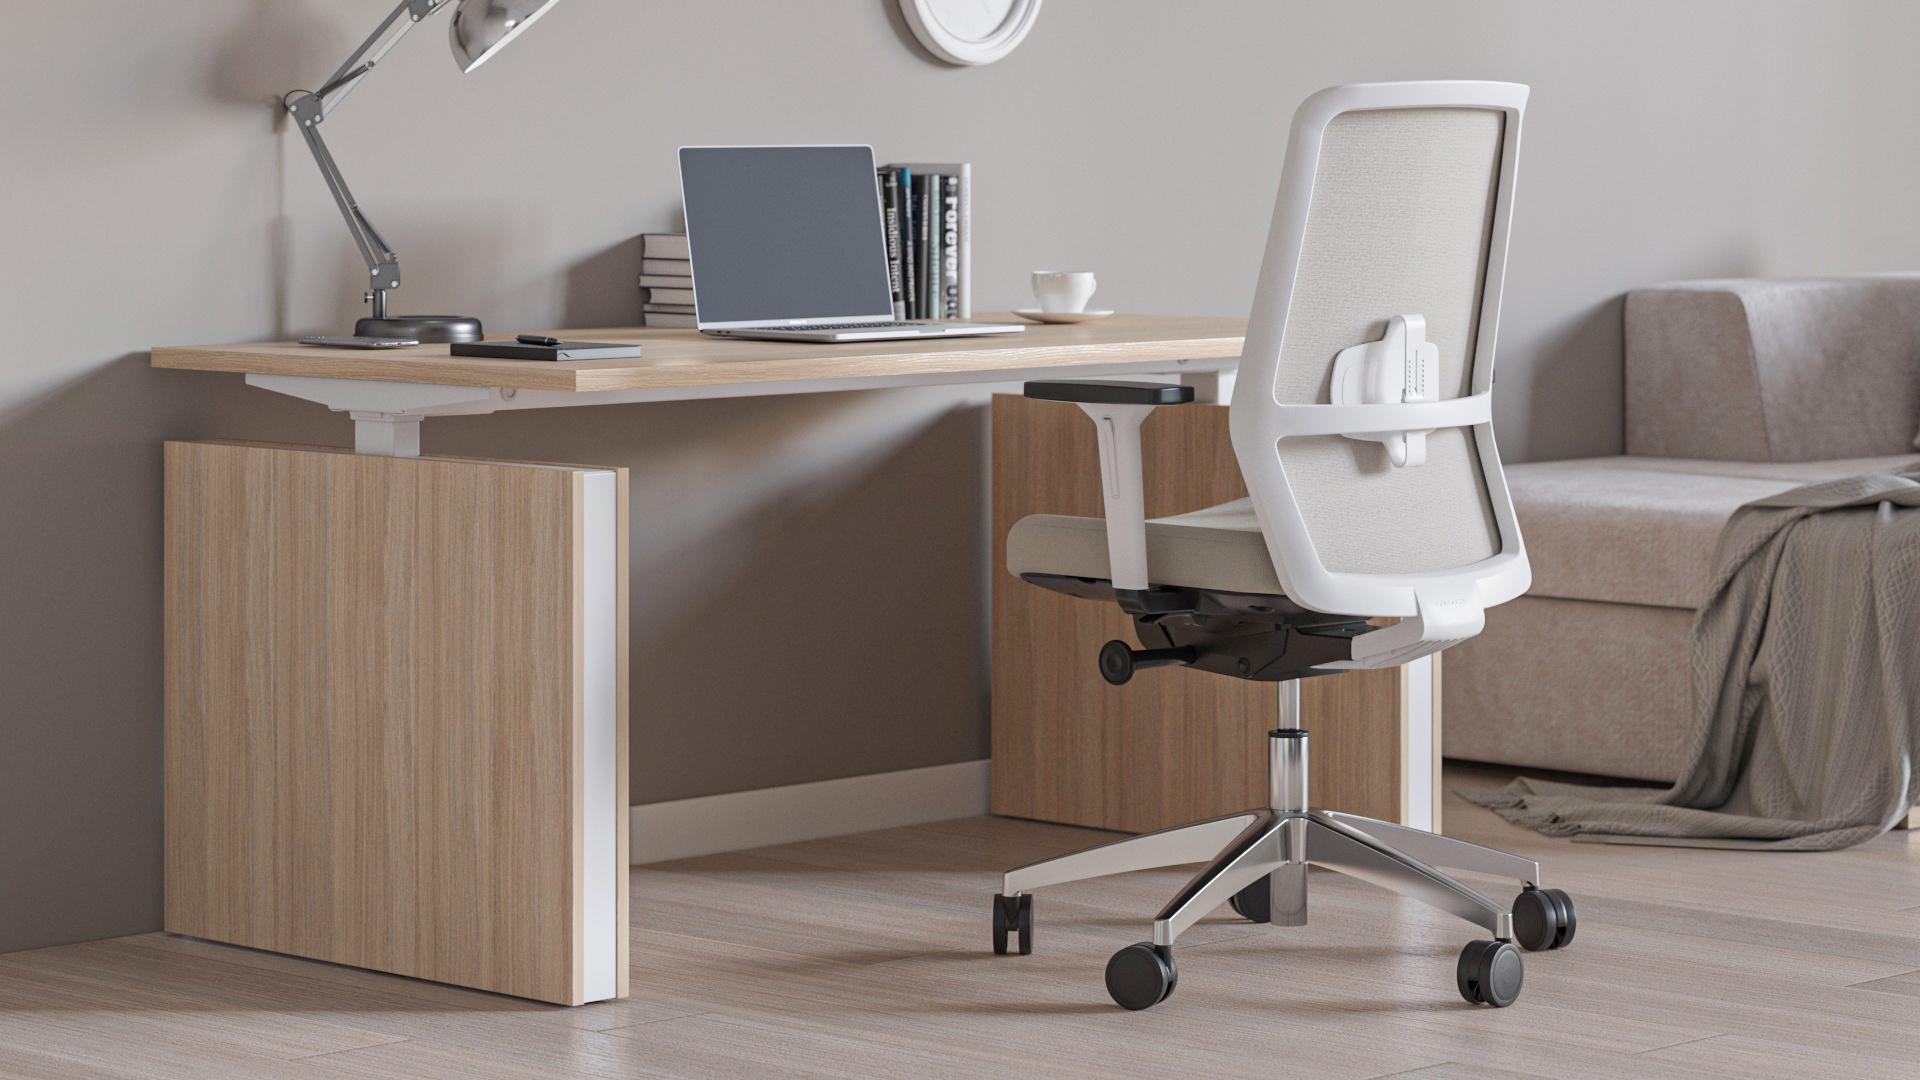 Bürostuhl ergonomisch - individuell einstellbar ǀ Surf